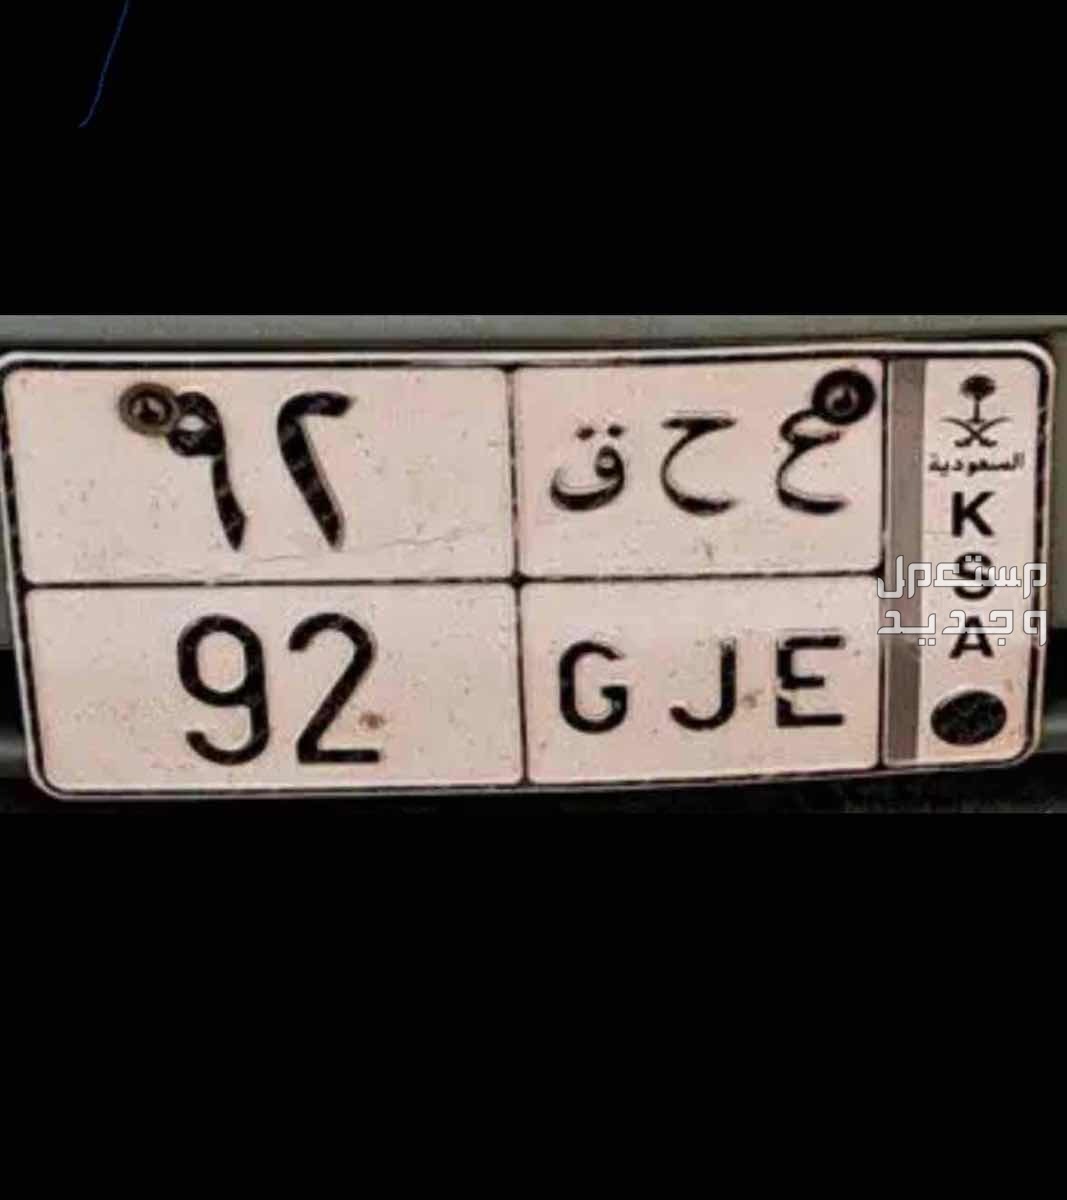 لوحة مميزة ع ح ق - 92 - خصوصي في الرياض بسعر 7600 ريال سعودي